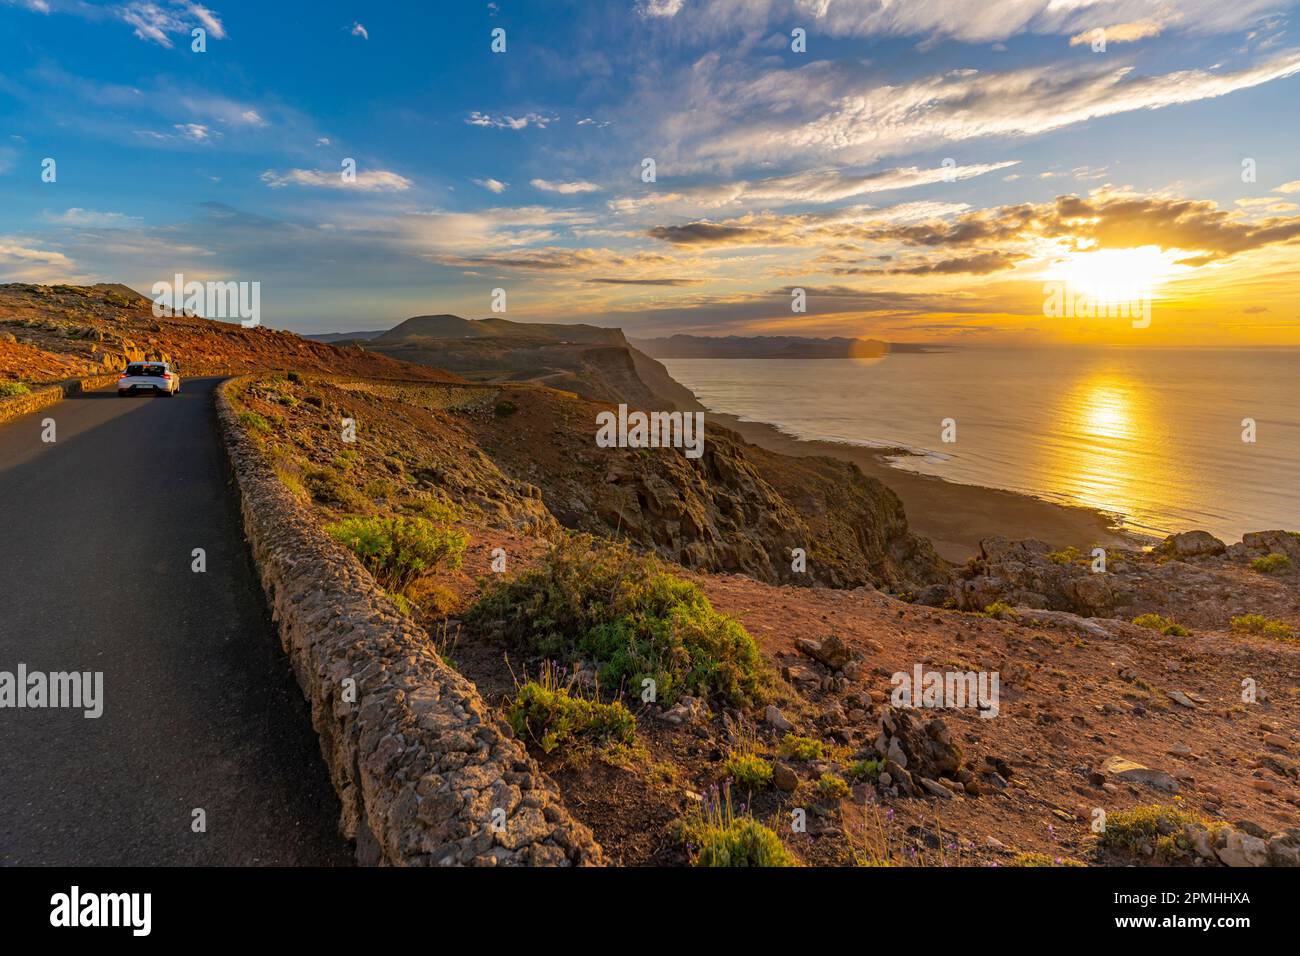 Blick auf Straße und vulkanische Küste von Mirador del Rio bei Sonnenuntergang, Lanzarote, Las Palmas, Kanarische Inseln, Spanien, Atlantik, Europa Stockfoto